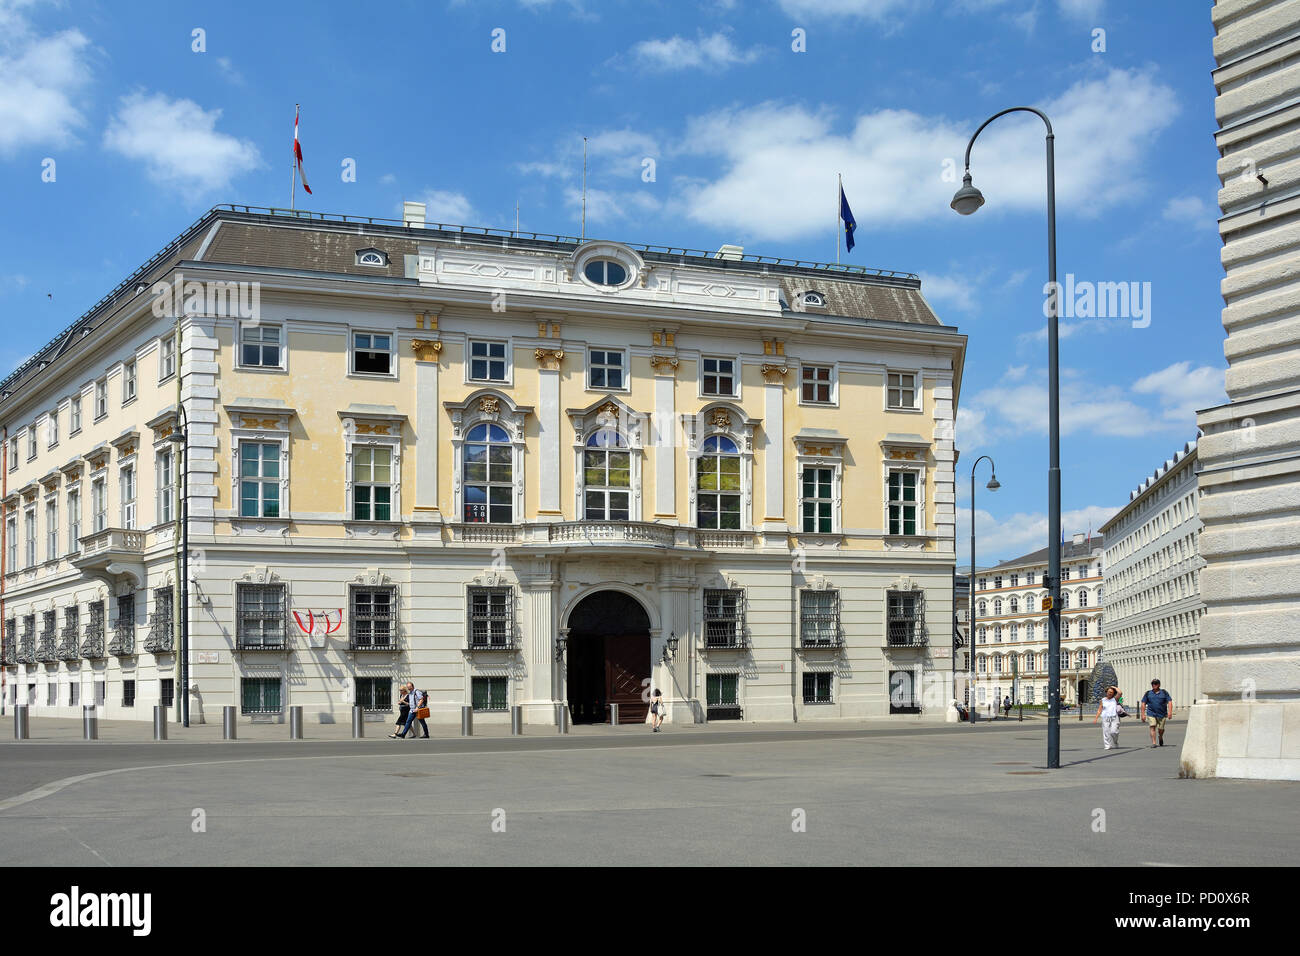 Bundeskanzleramt der Republik Österreich am Ballhausplatz in Wien - Österreich. Stockfoto